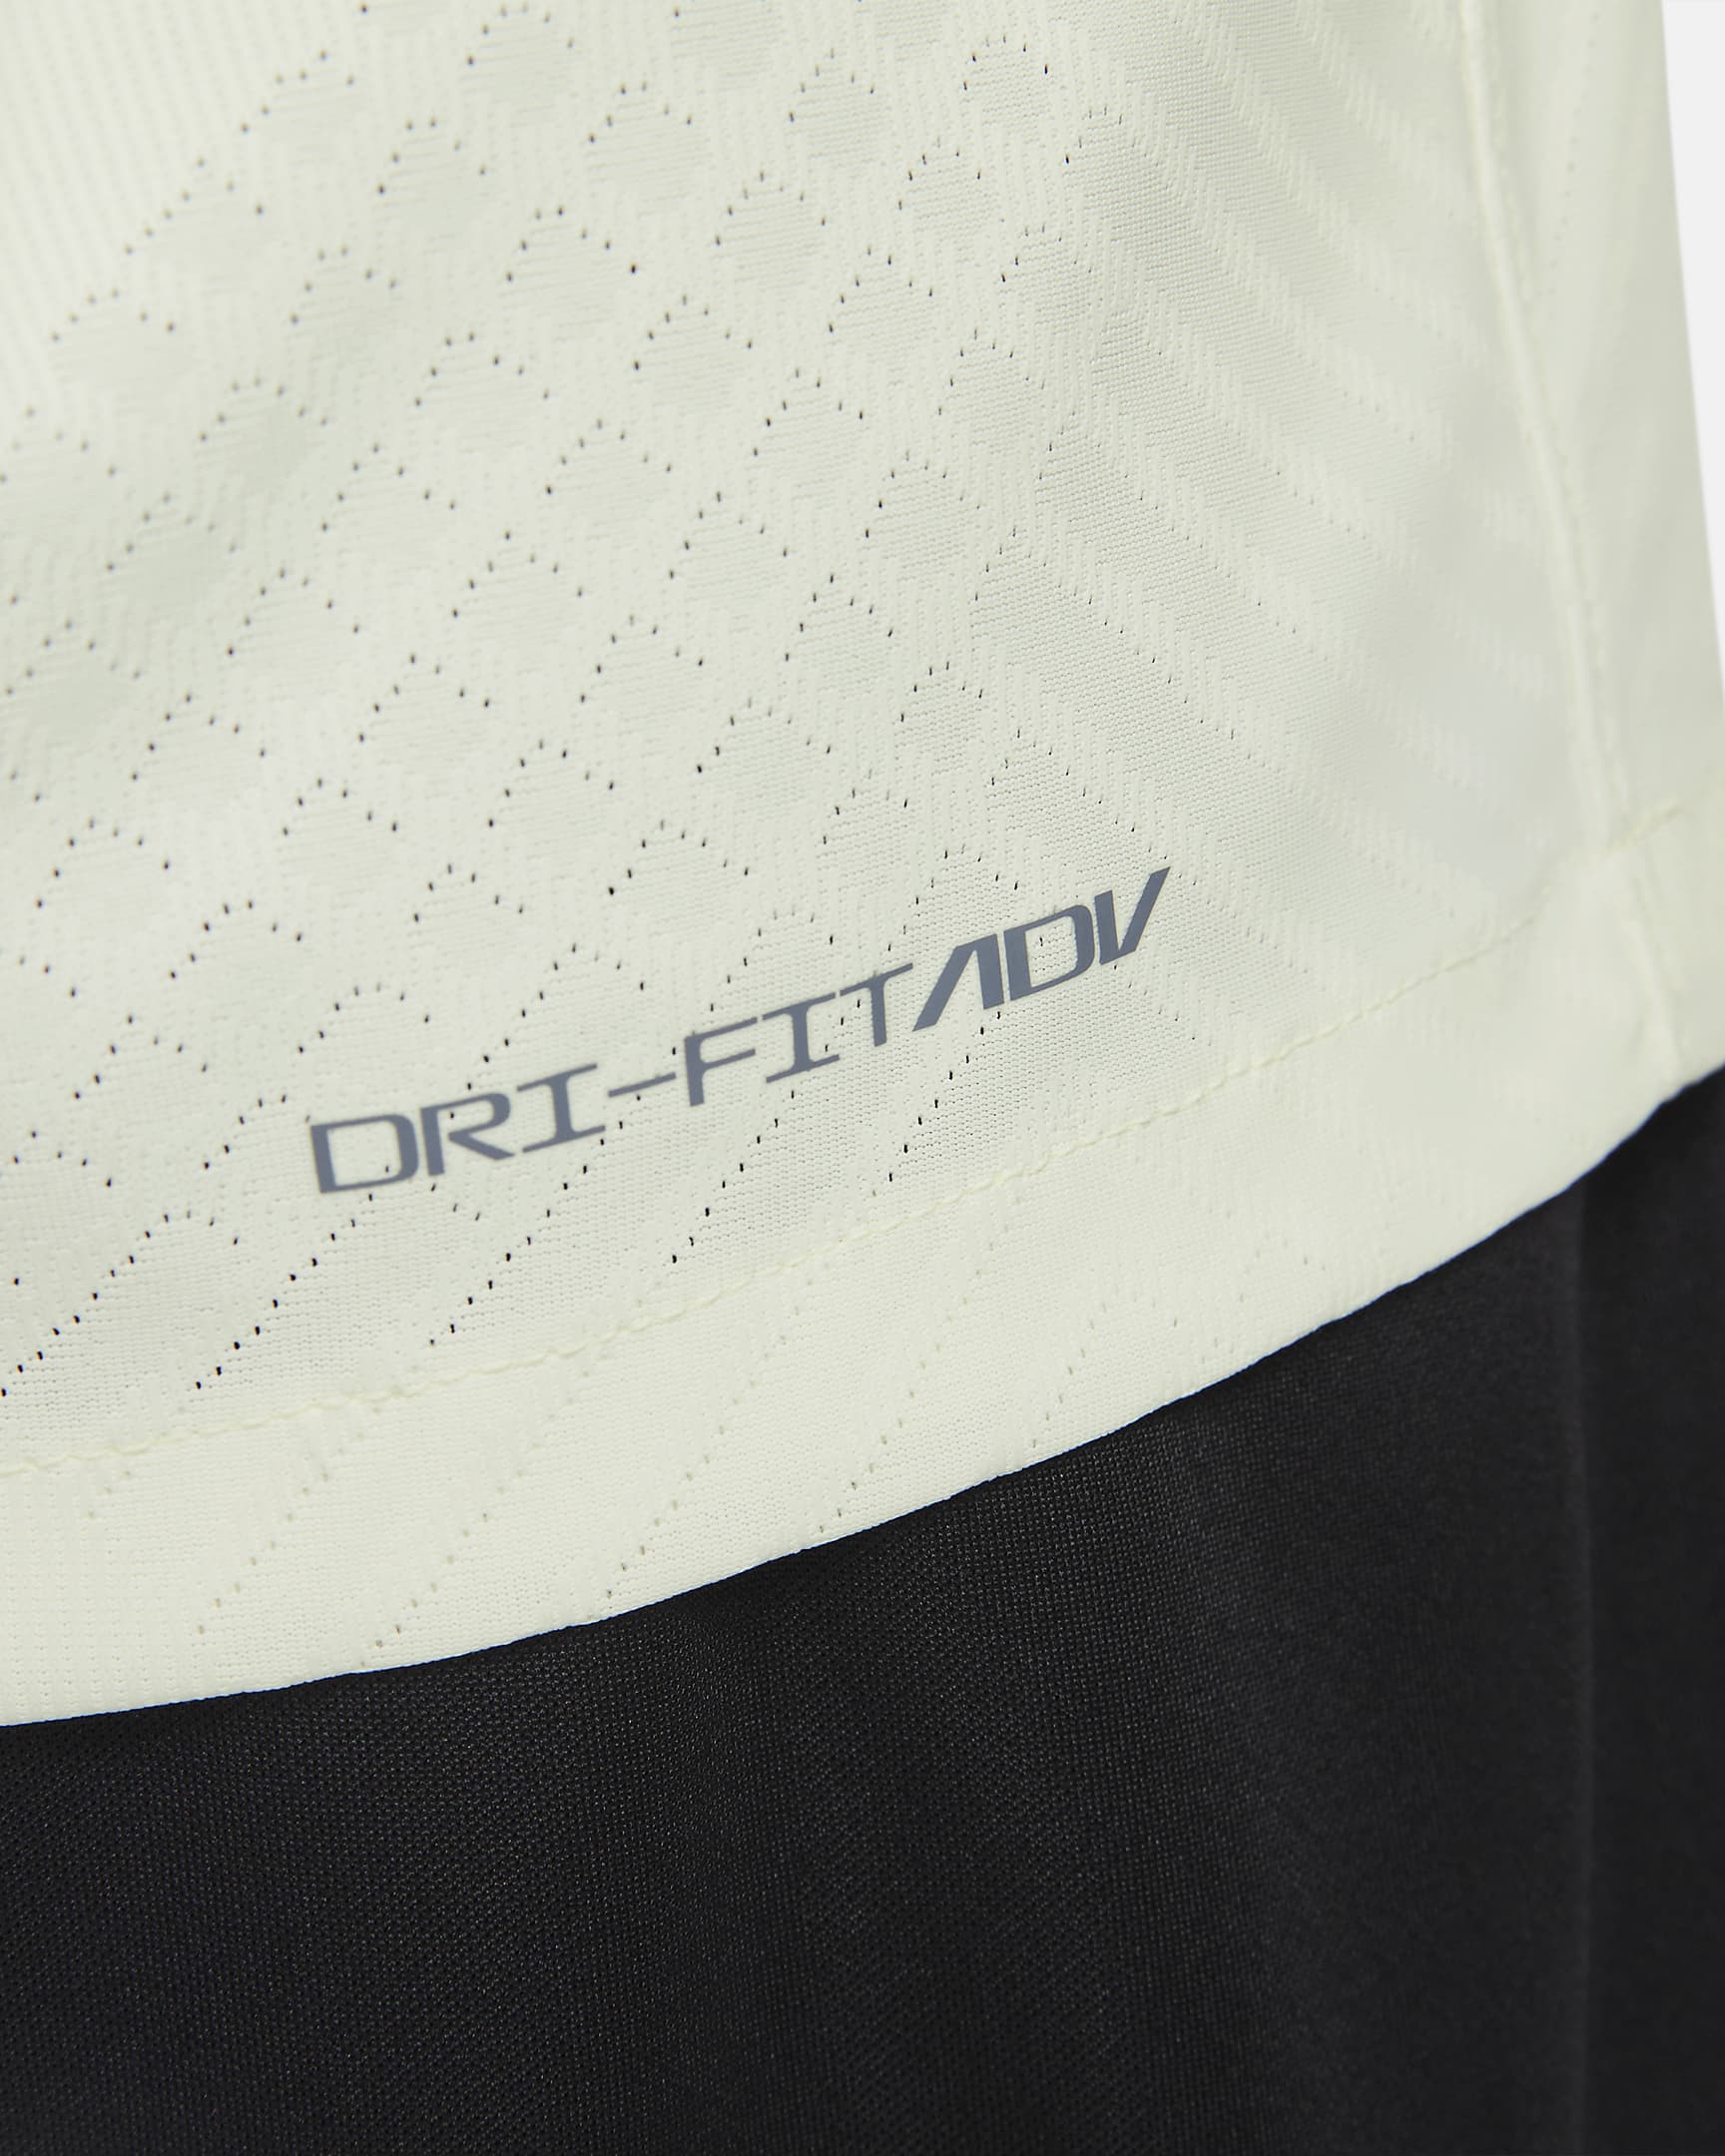 Jersey de fútbol Nike Dri-FIT ADV para hombre Club América alternativo ...